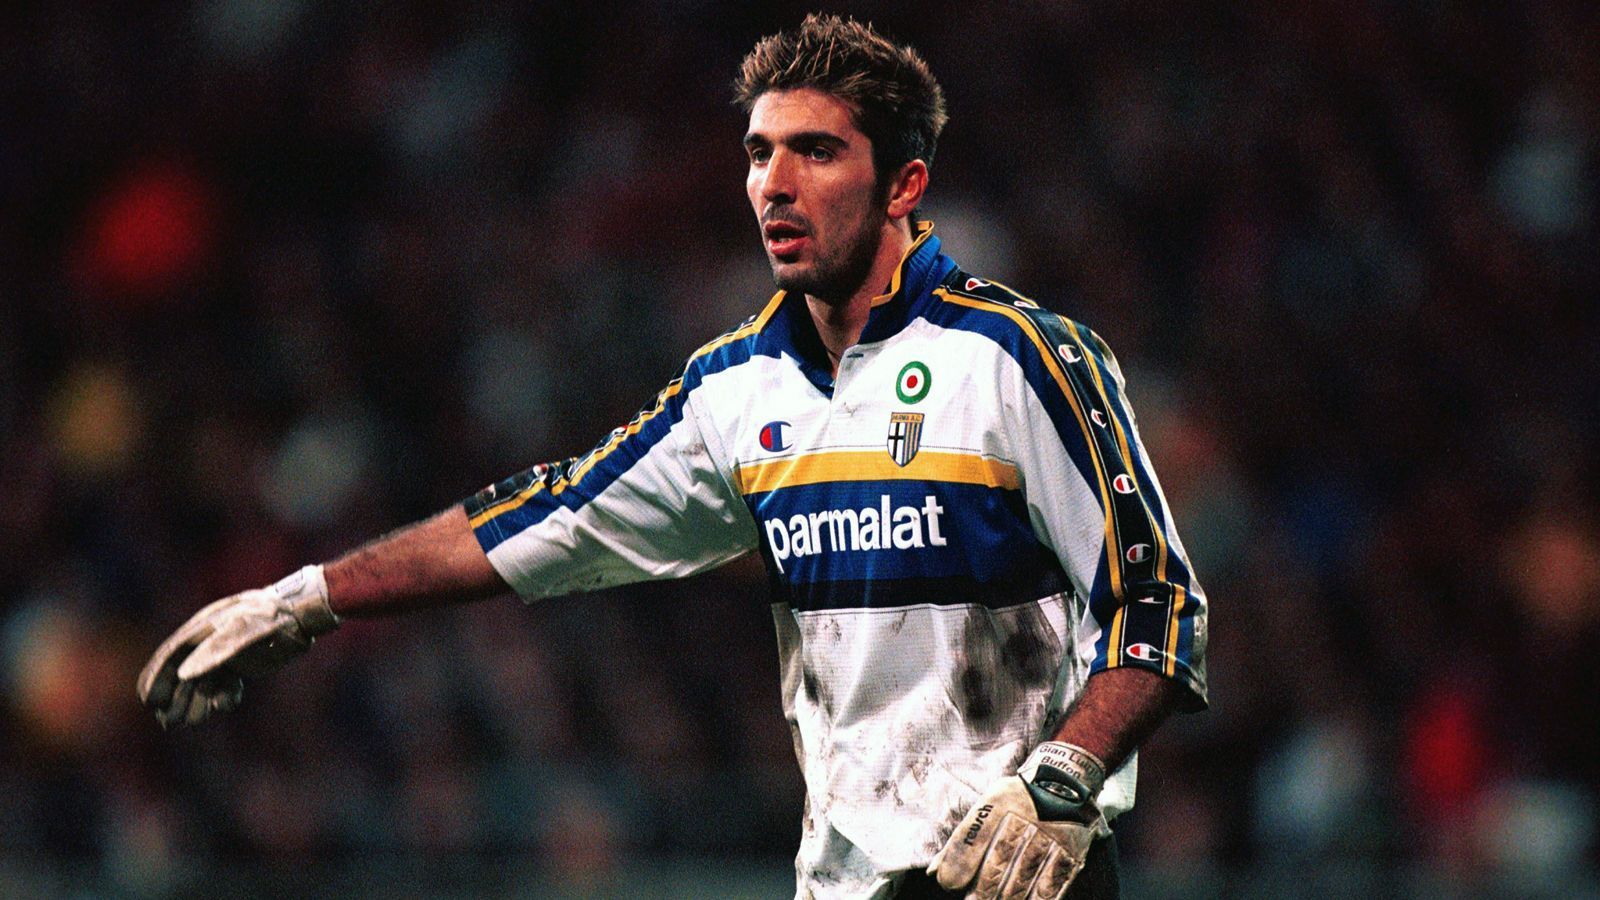 
                <strong>Tor - Gianluigi Buffon</strong><br>
                Von Ancelotti trainiert bei: ParmaPflichtspiele unter Ancelotti: 74
              